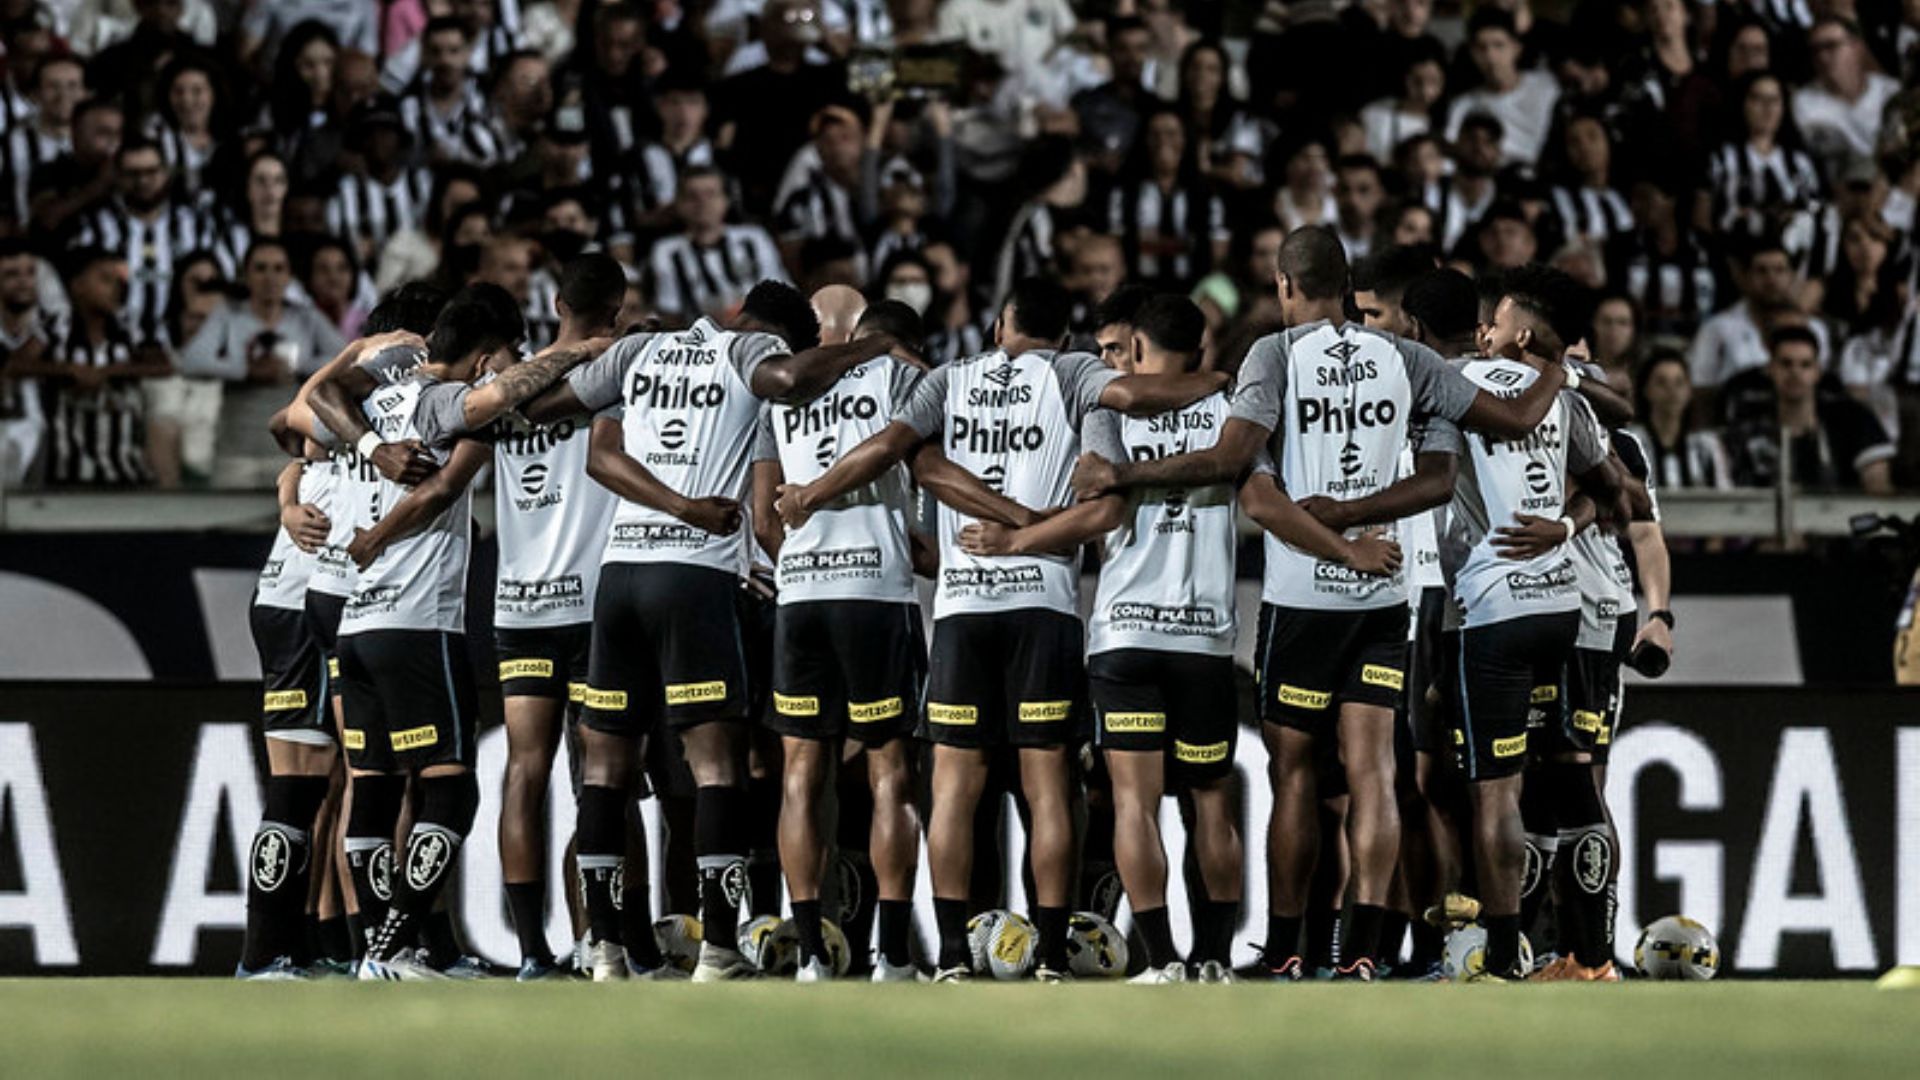 Jogadores do Santos reunidos antes do início da partida